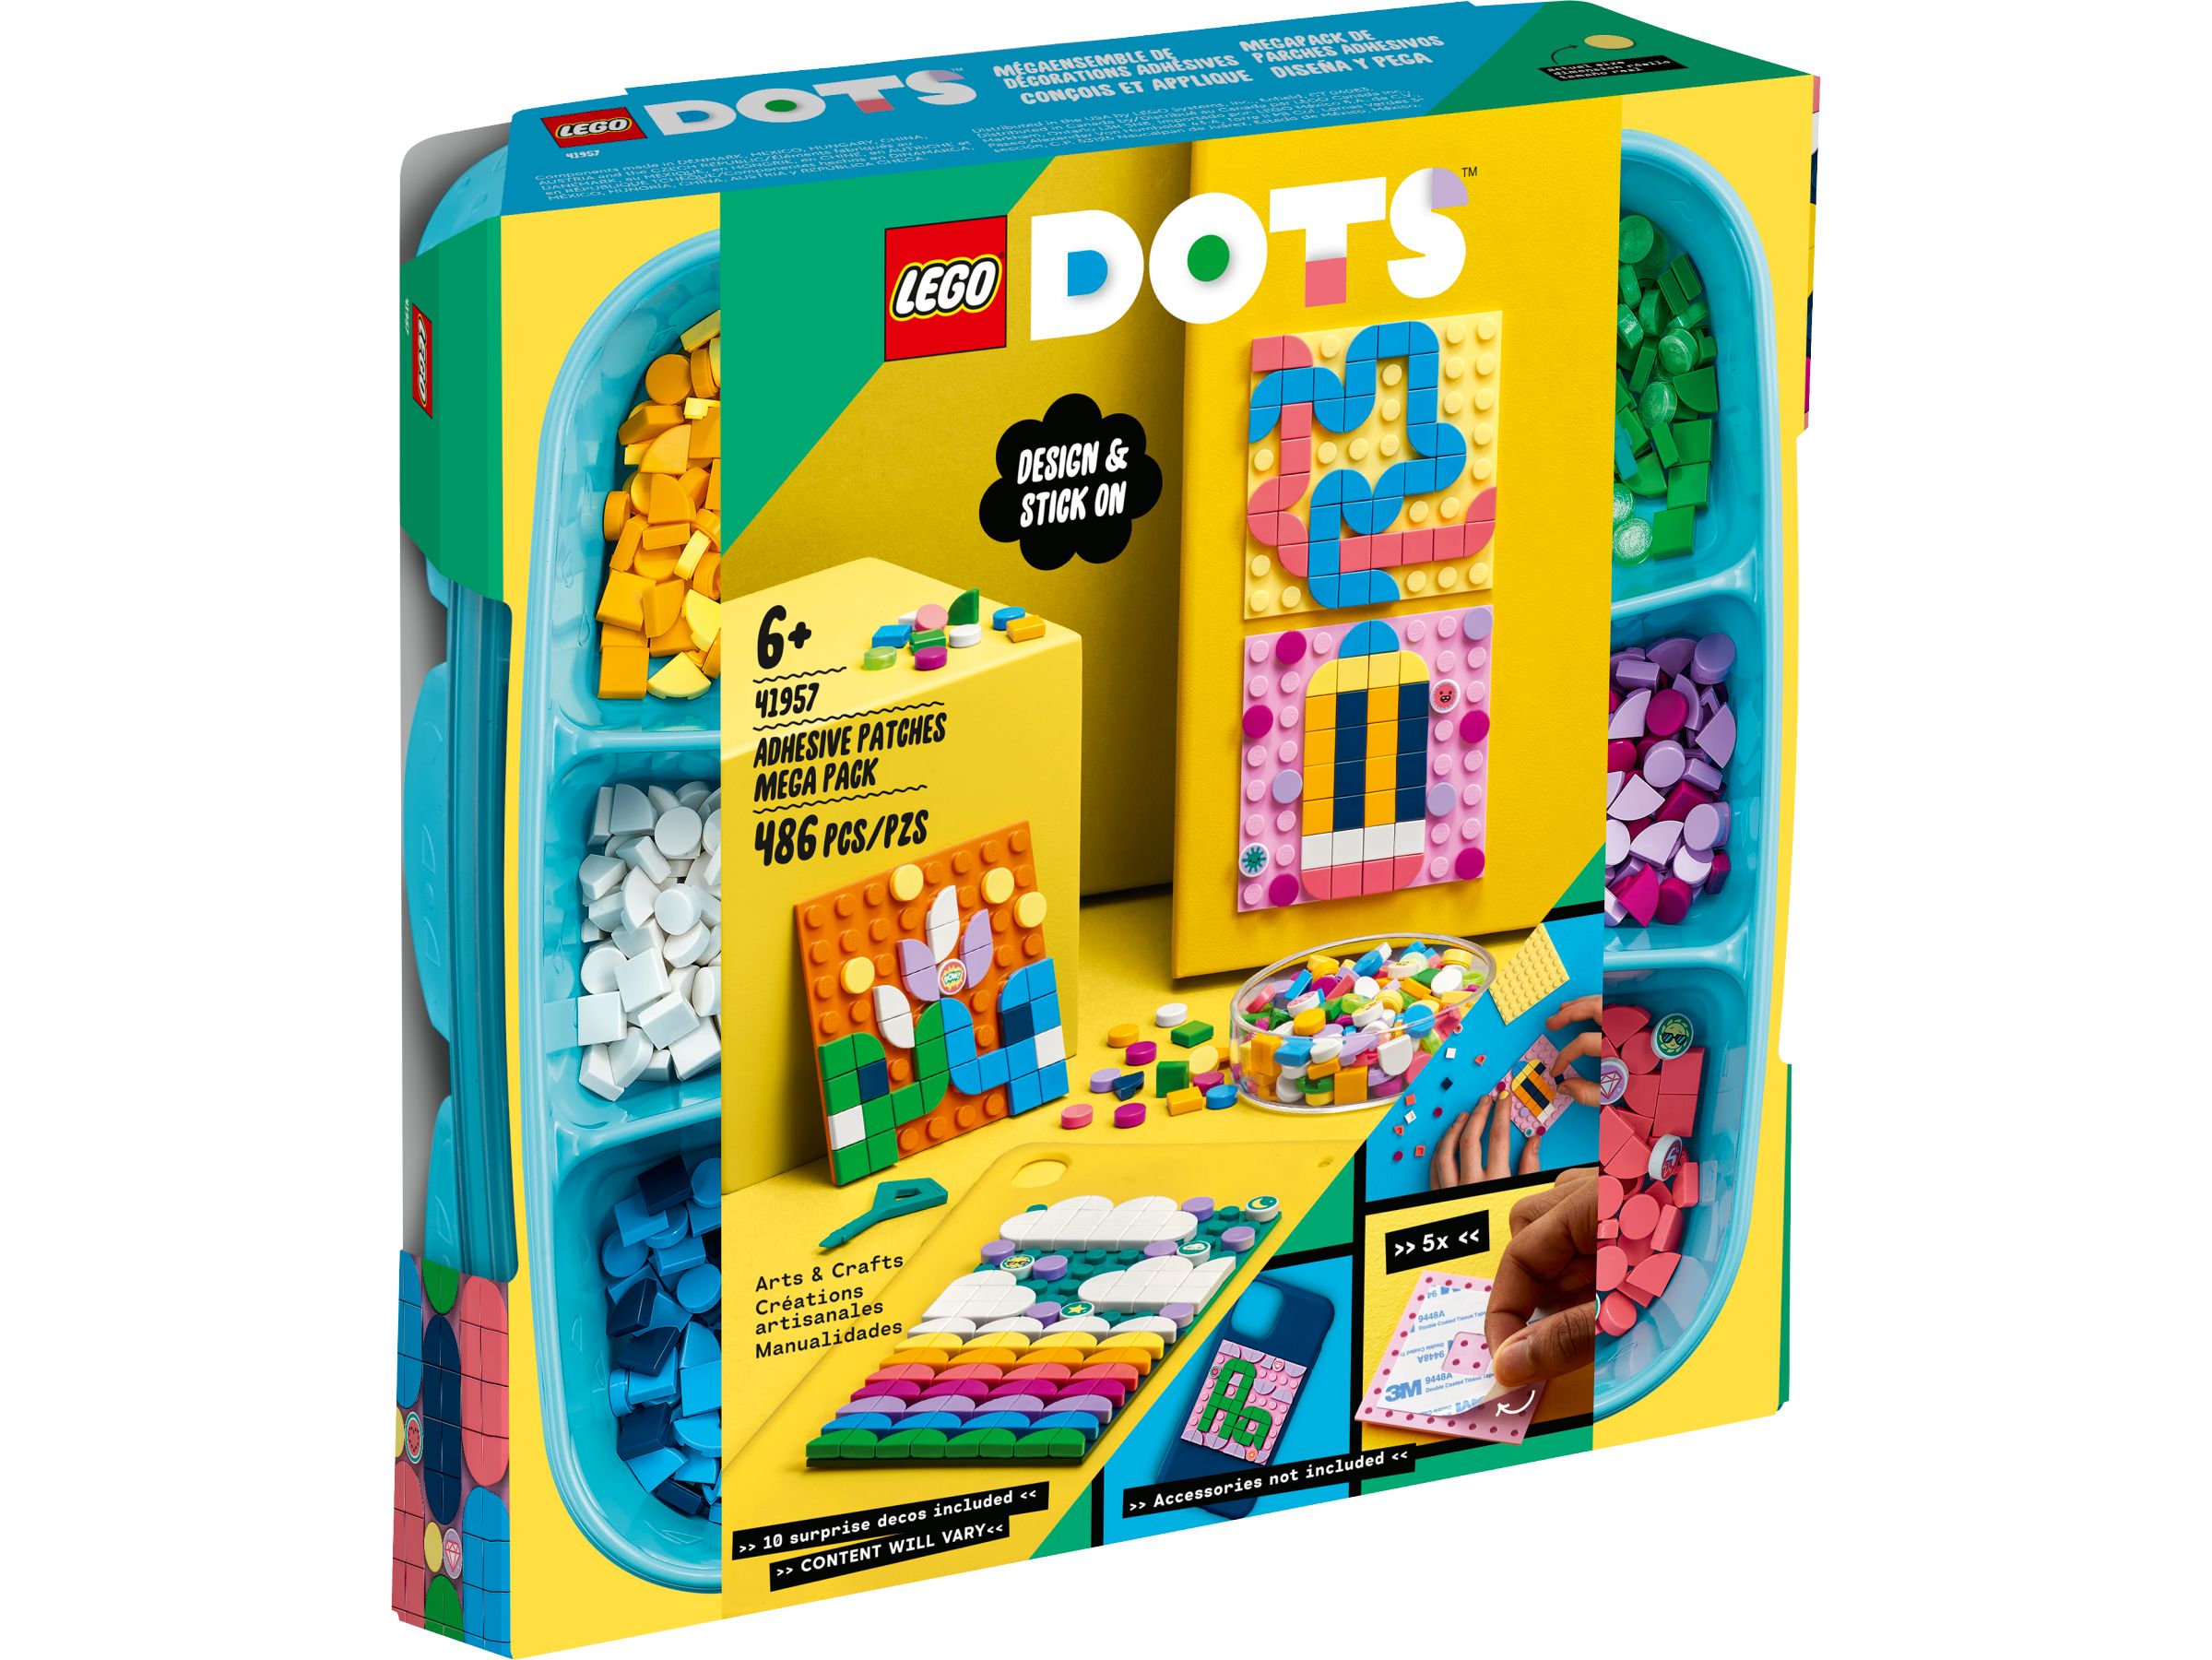 LEGO Dots 41957 Kreativ-Aufkleber Set LEGO_41957_alt1.jpg